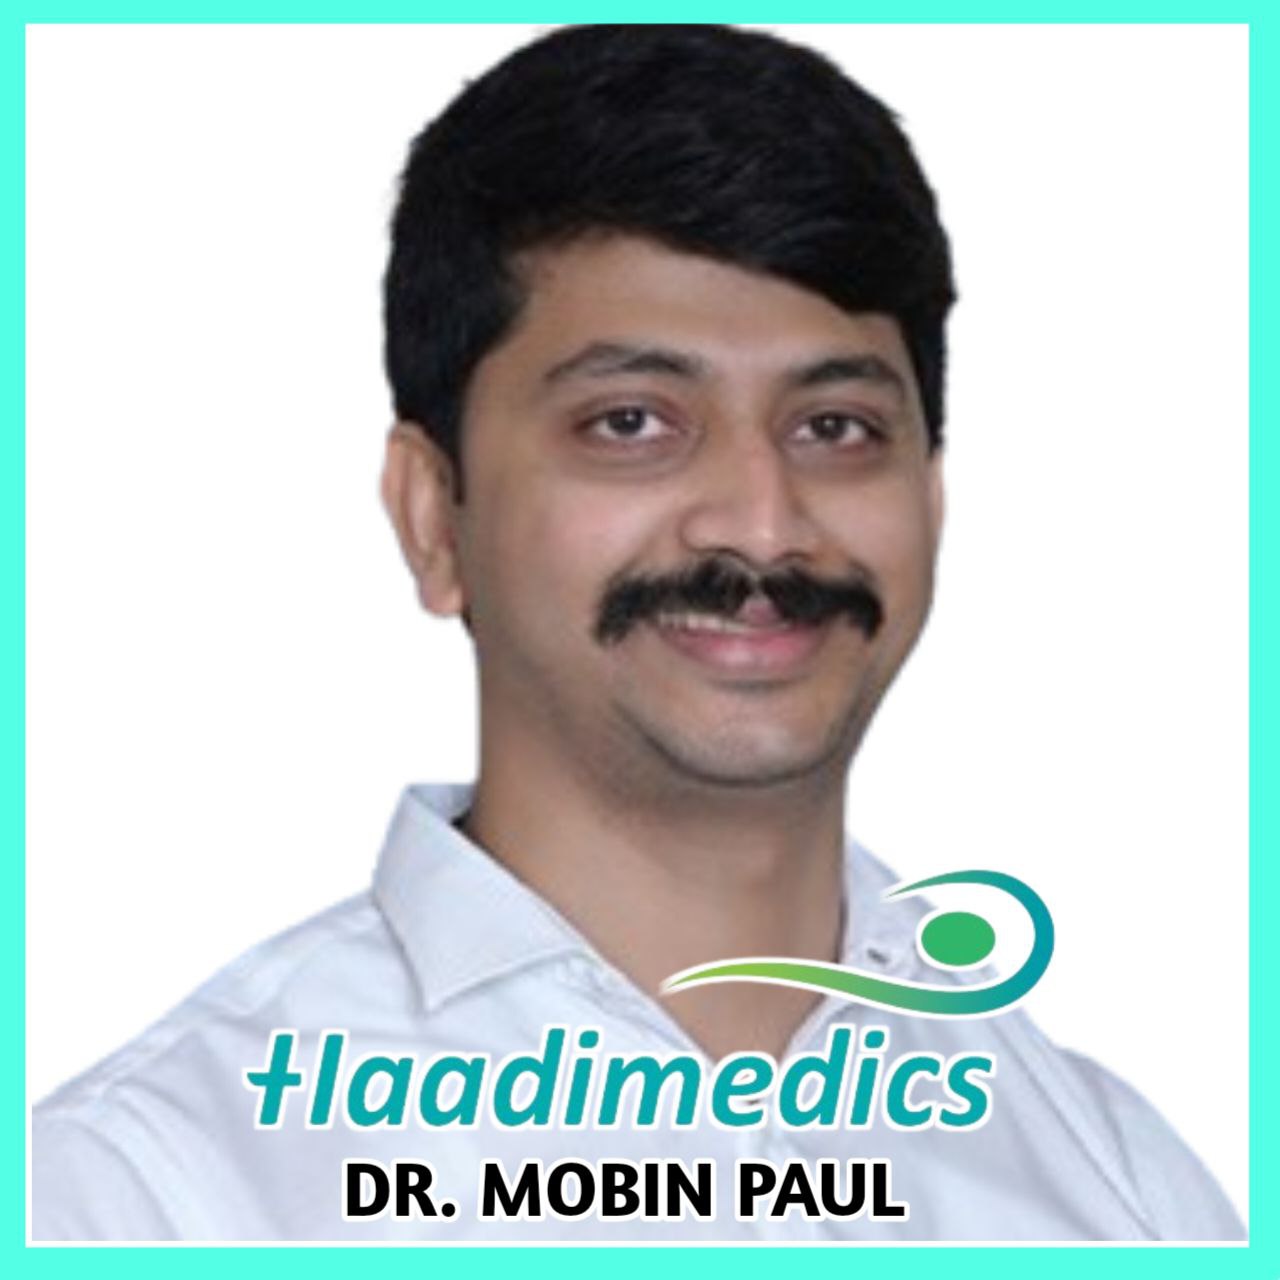 Dr. Mobin Paul